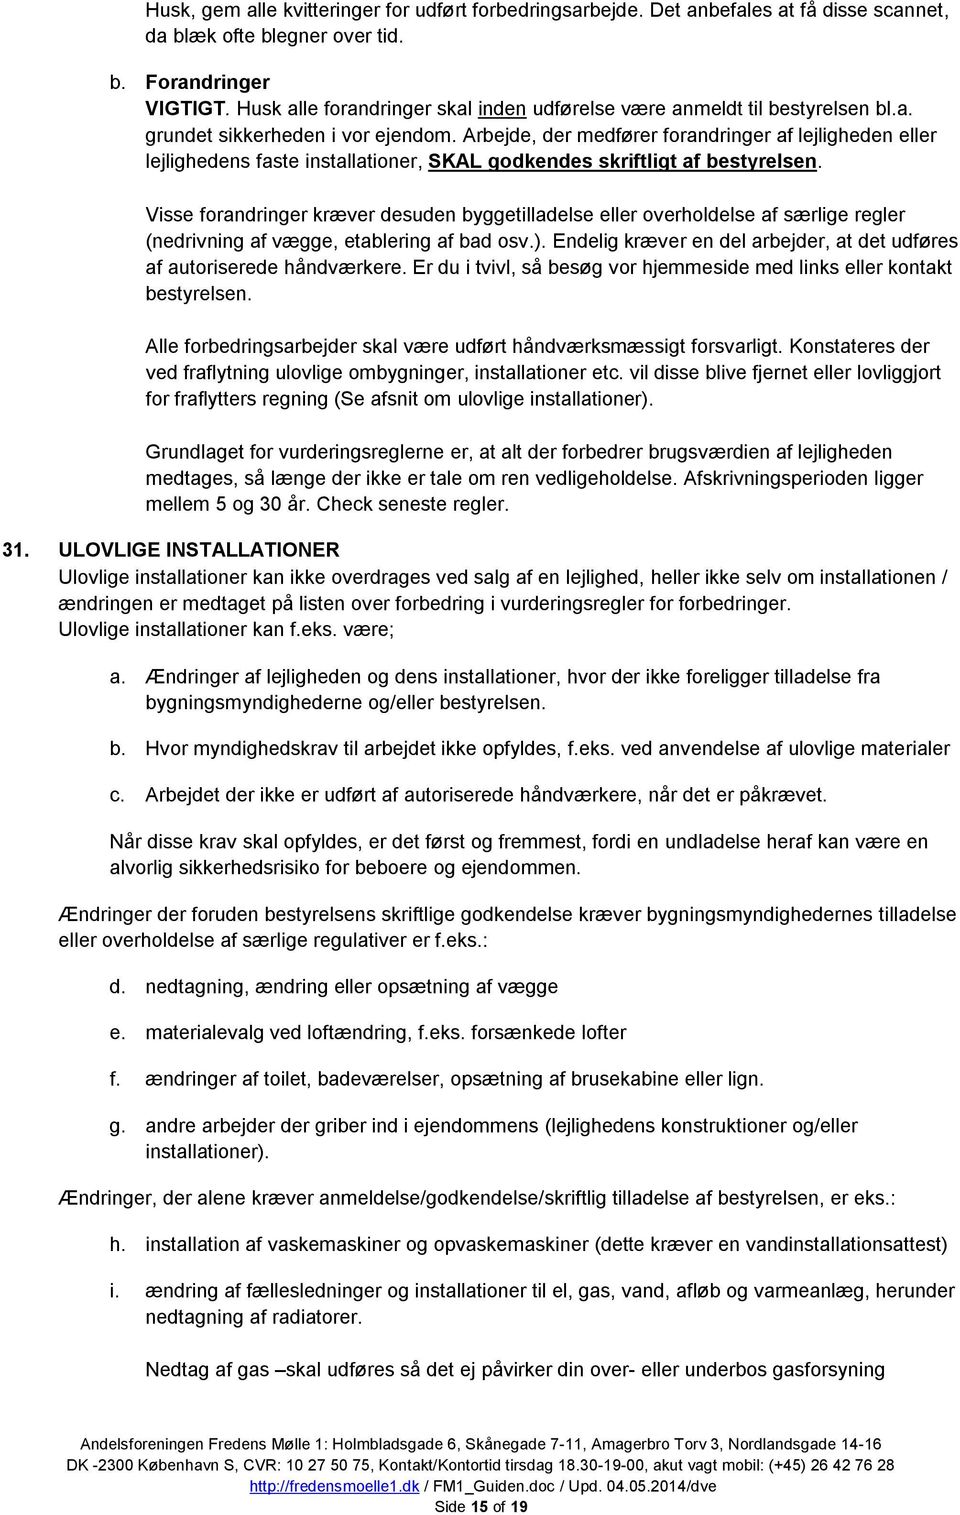 AB Fredens mølle 1 - Guiden - PDF Gratis download